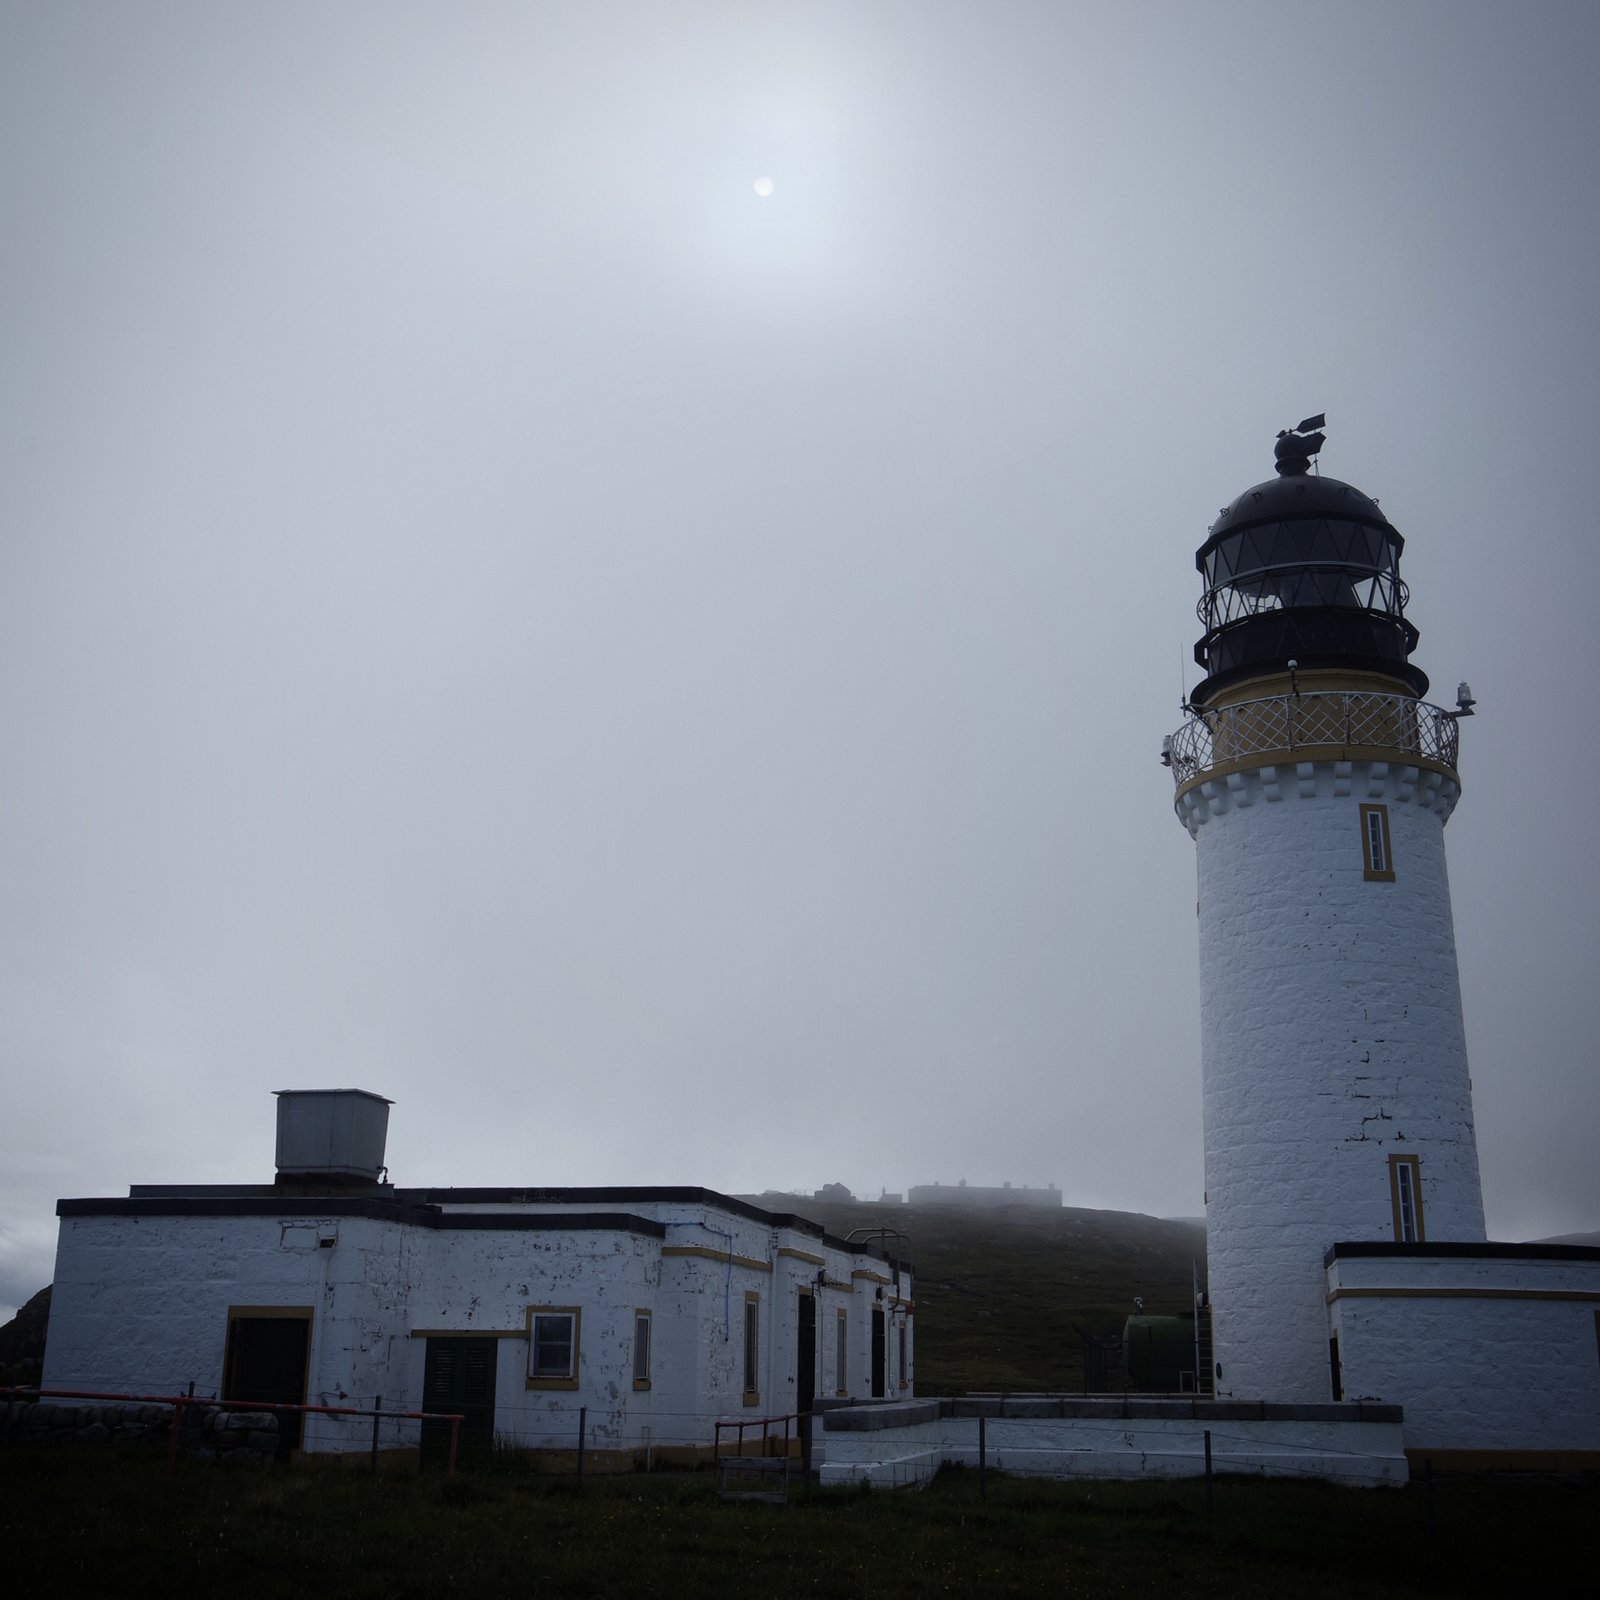 Cape Wrath Lighthouse